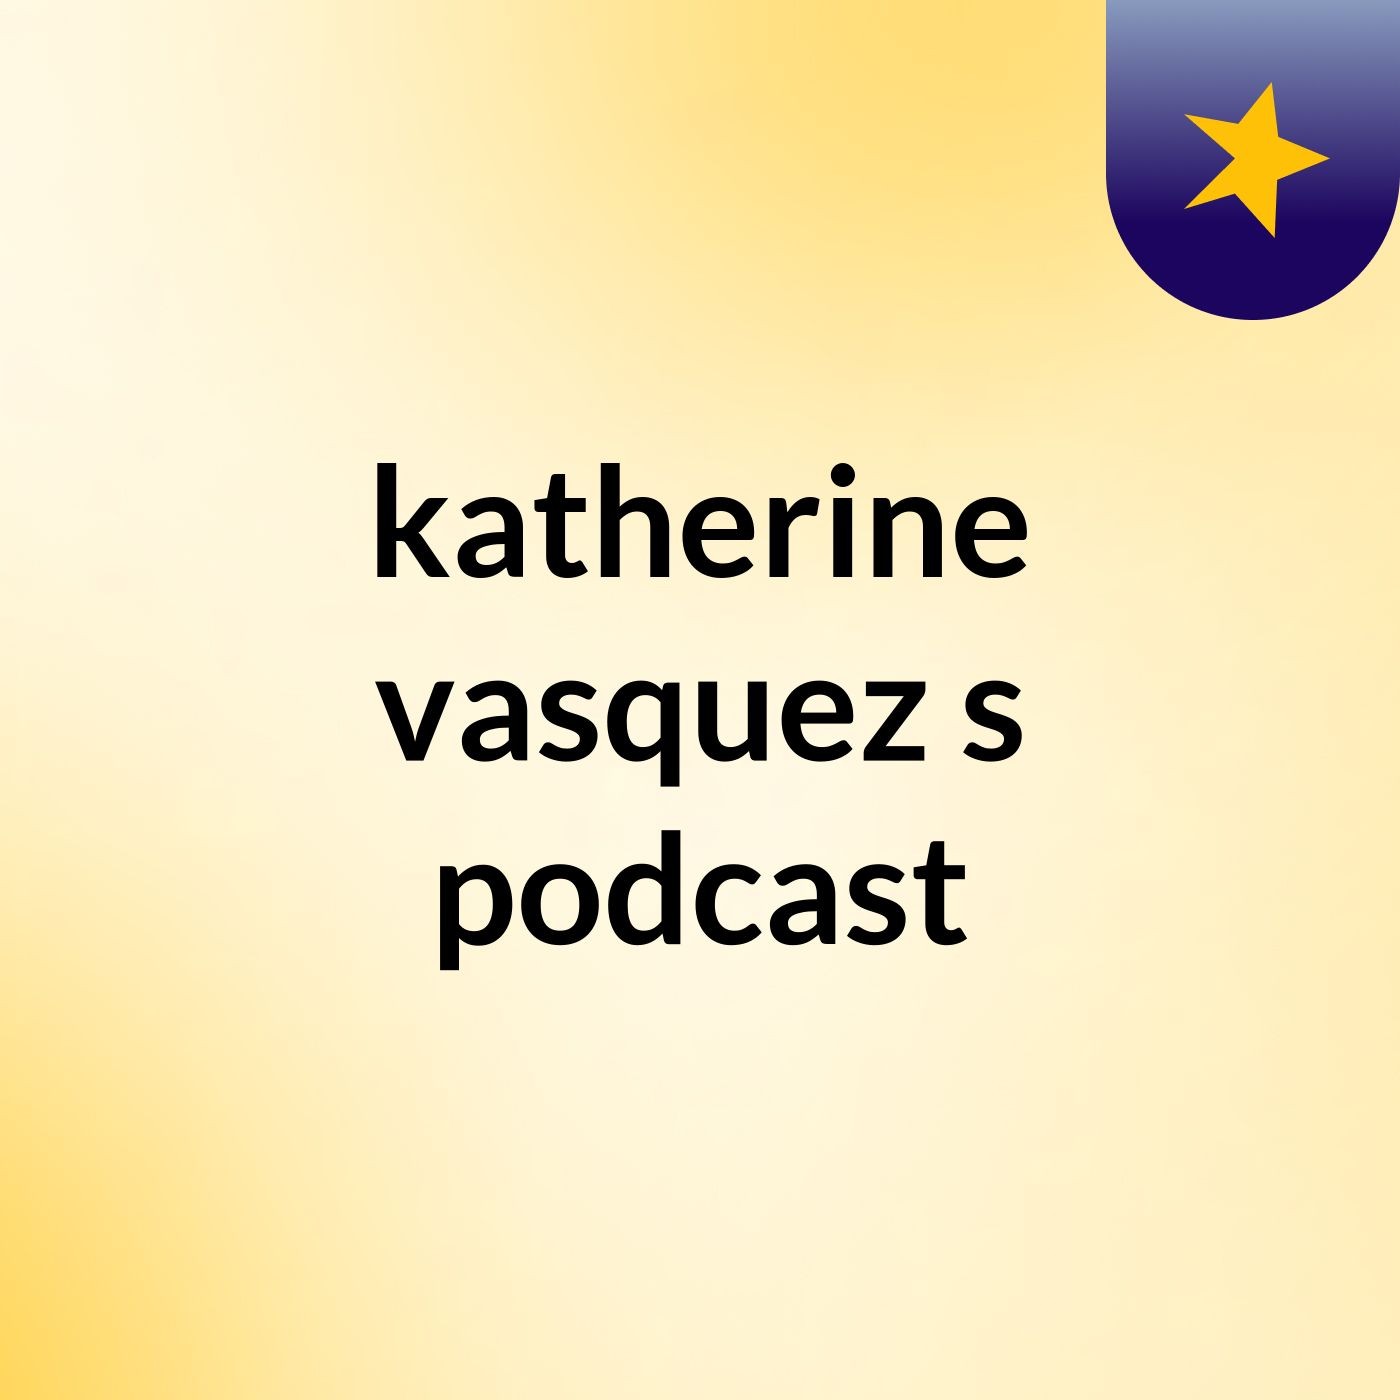 katherine vasquez's podcast